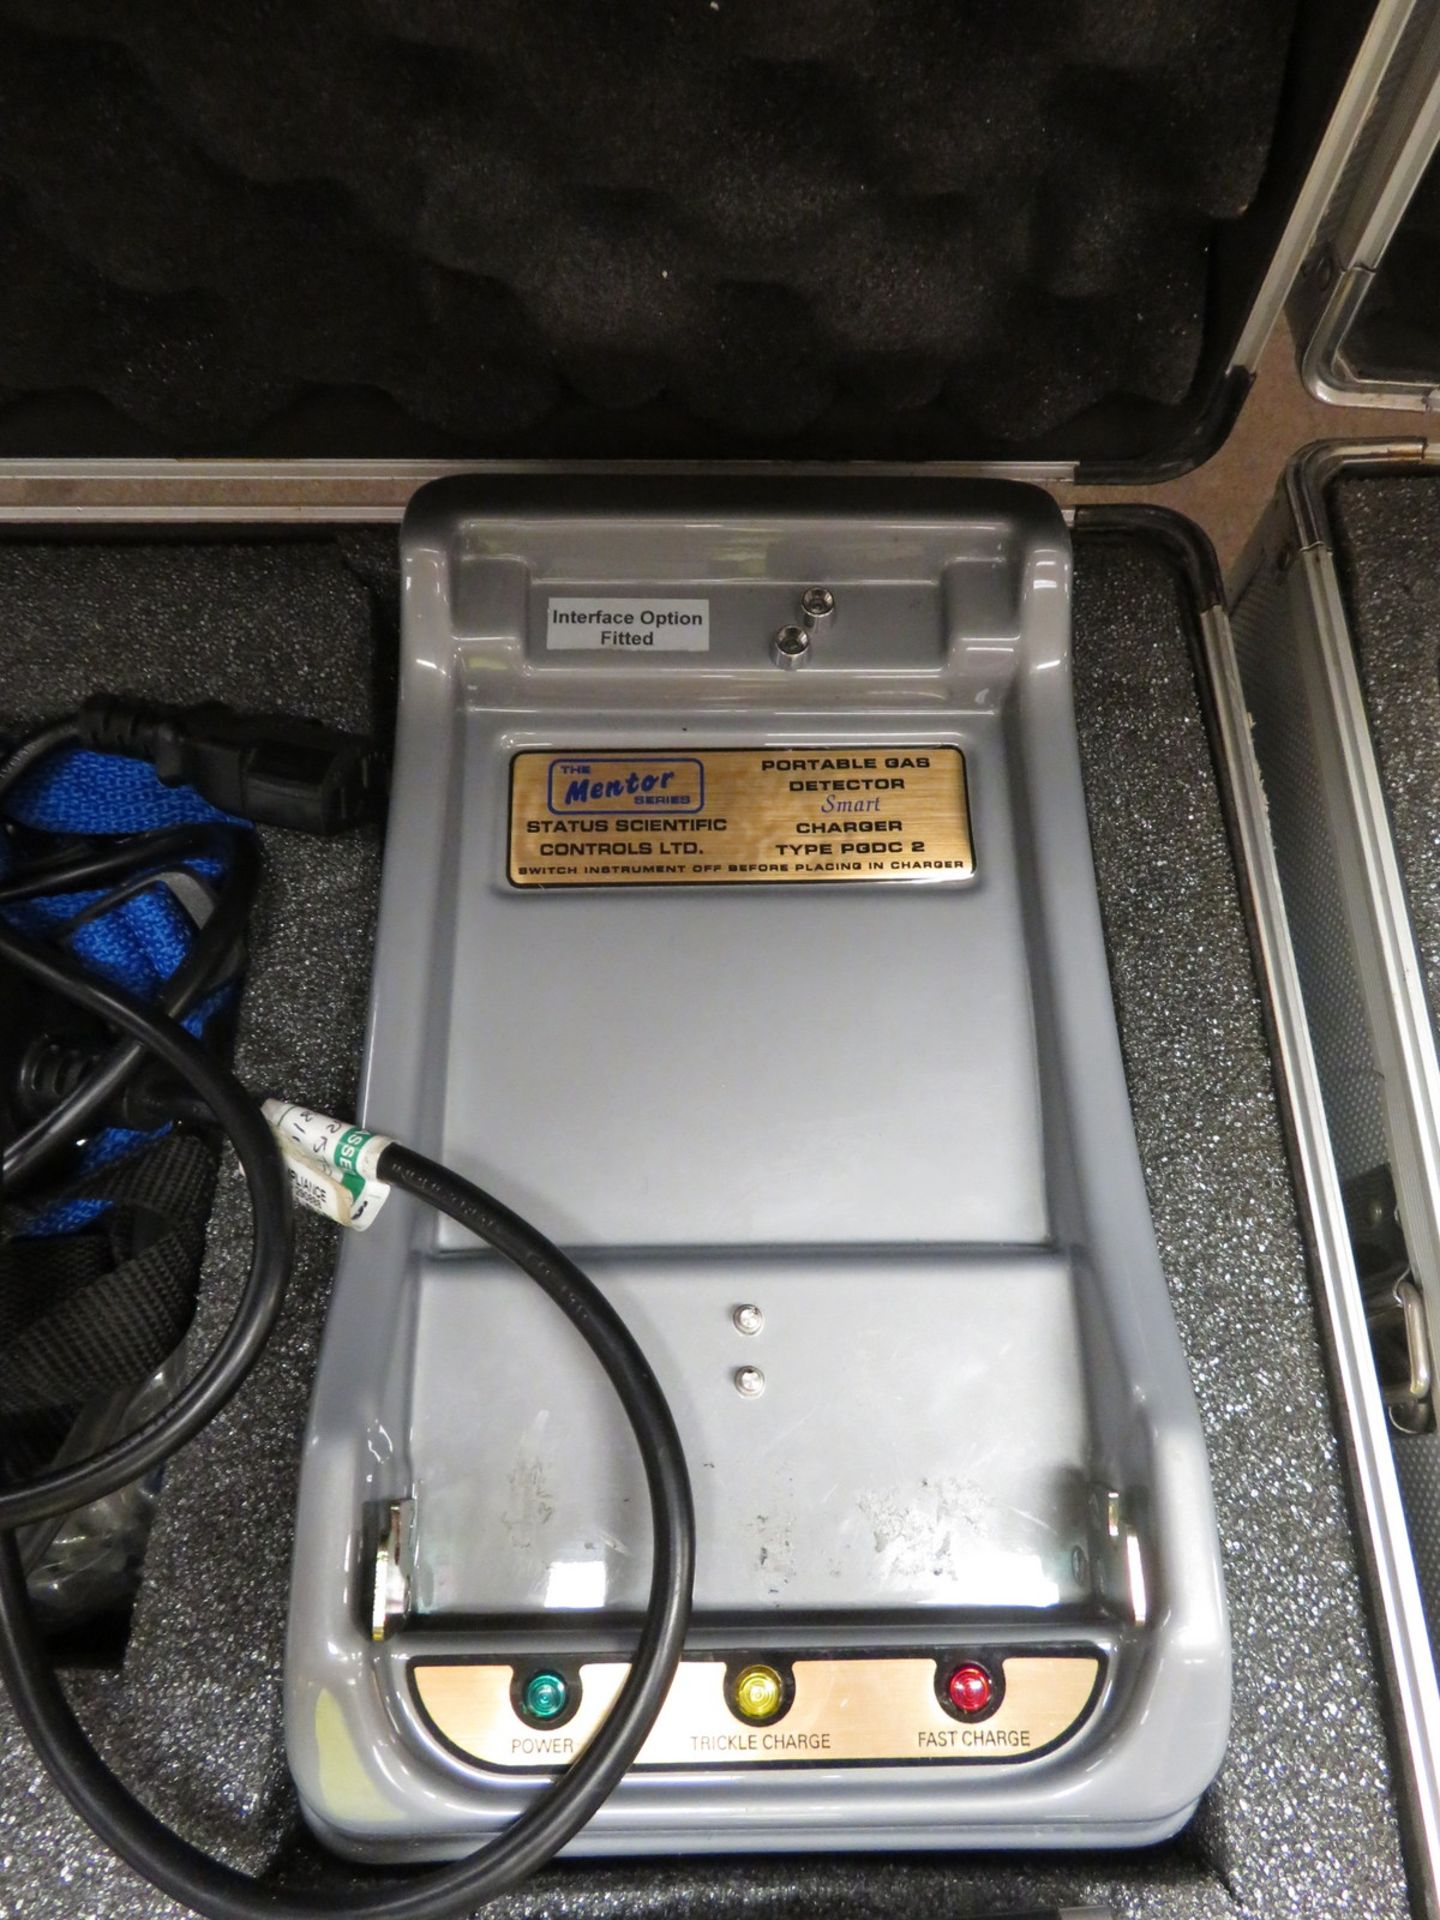 Status Scientific PGD2 portable gas detector set - Image 3 of 4